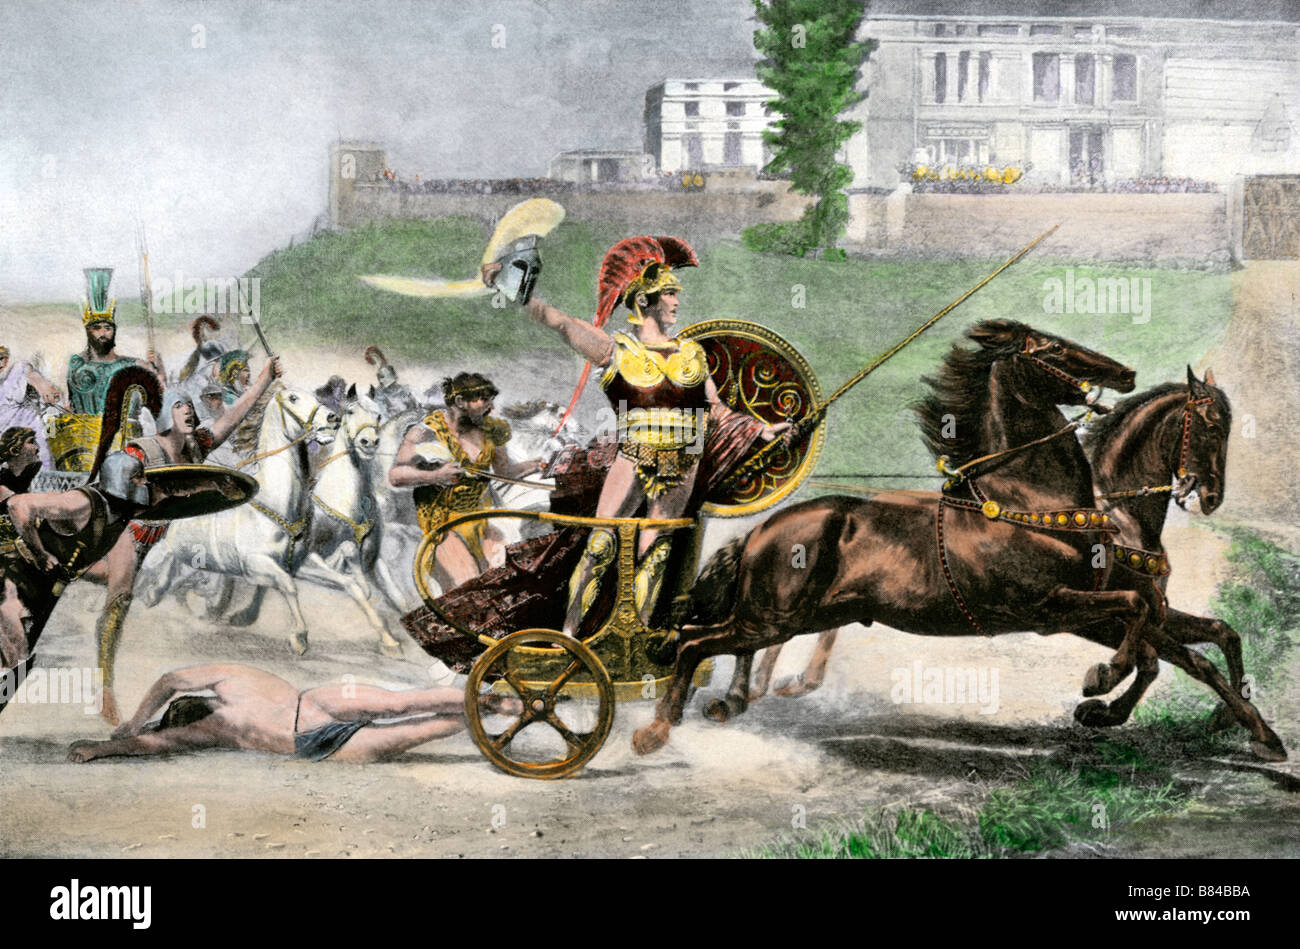 Griechischen Helden Achilles ziehen Hector's Körper hinter seinem Wagen im Trojanischen Krieg. Handcolorierte halftone einer Abbildung Stockfoto